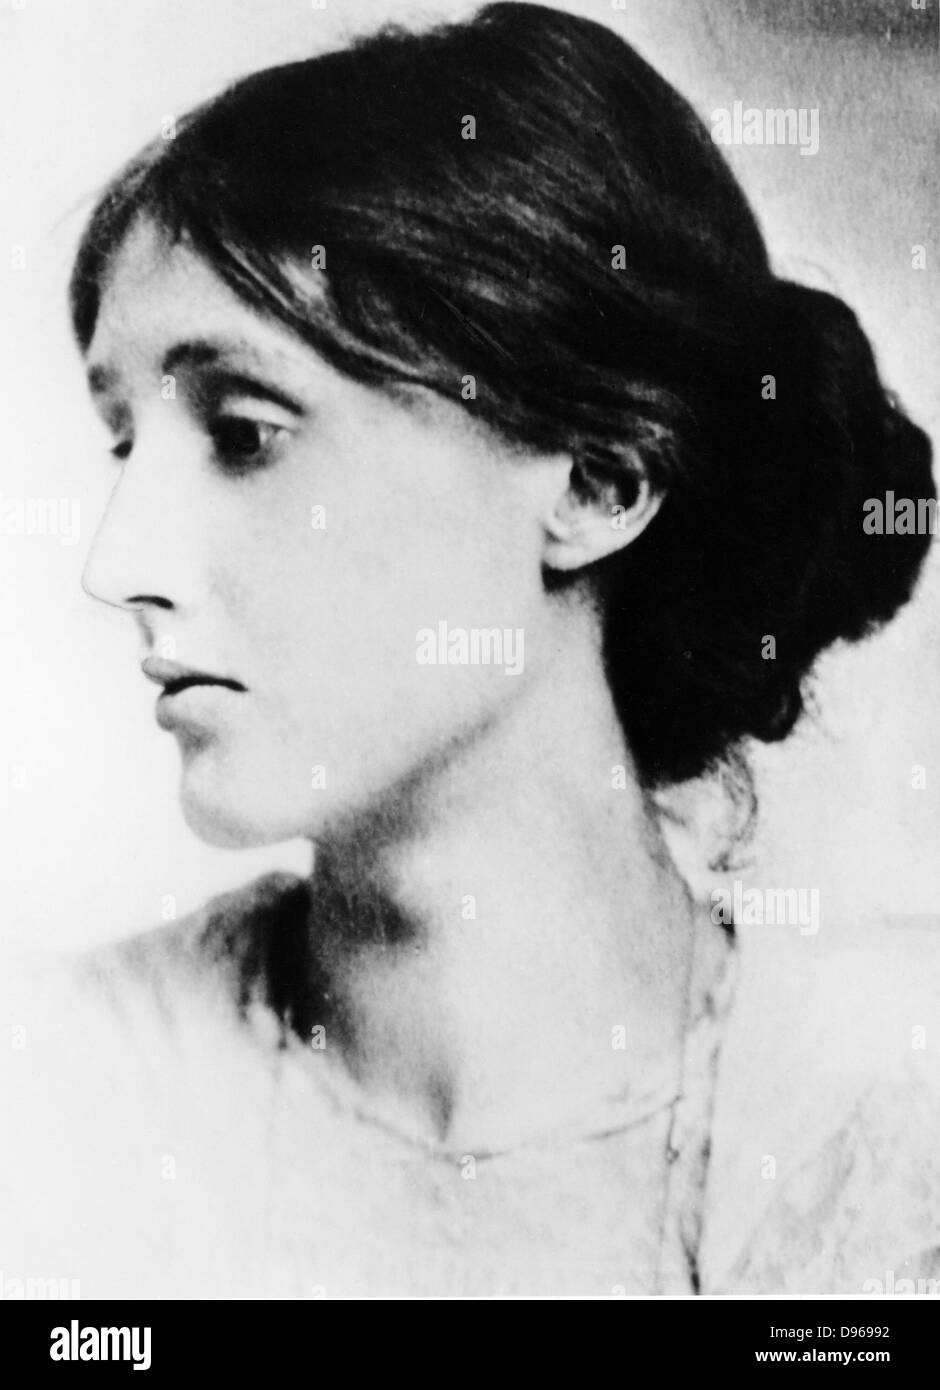 Virginia Woolf (nato Stephen - 1882-1941). Romanziere inglese, saggista e critico. Fotografia Foto Stock